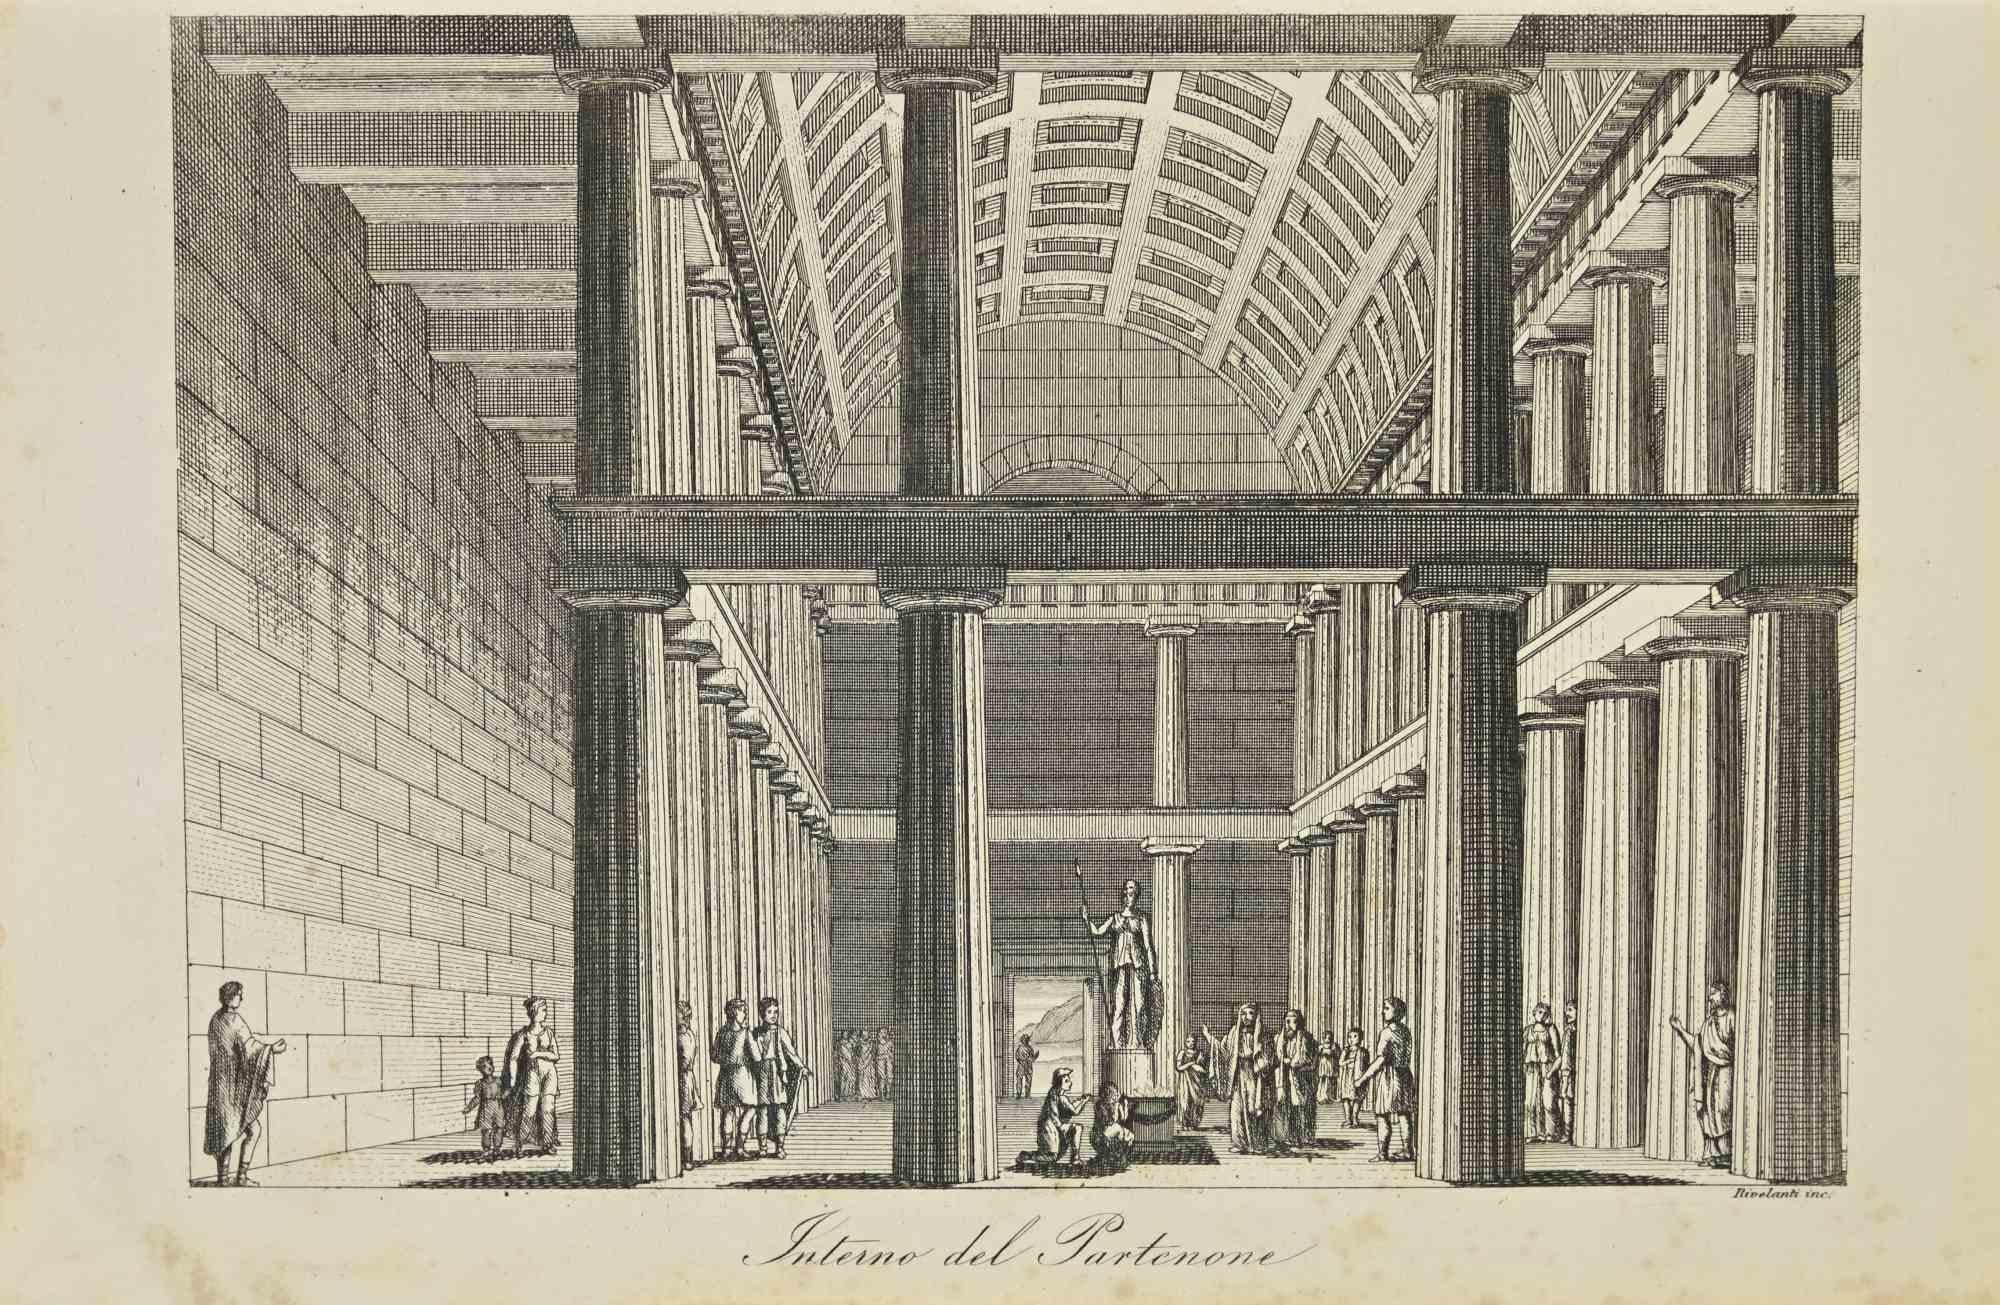 Interieur des Parthenon – Lithographie – 1862